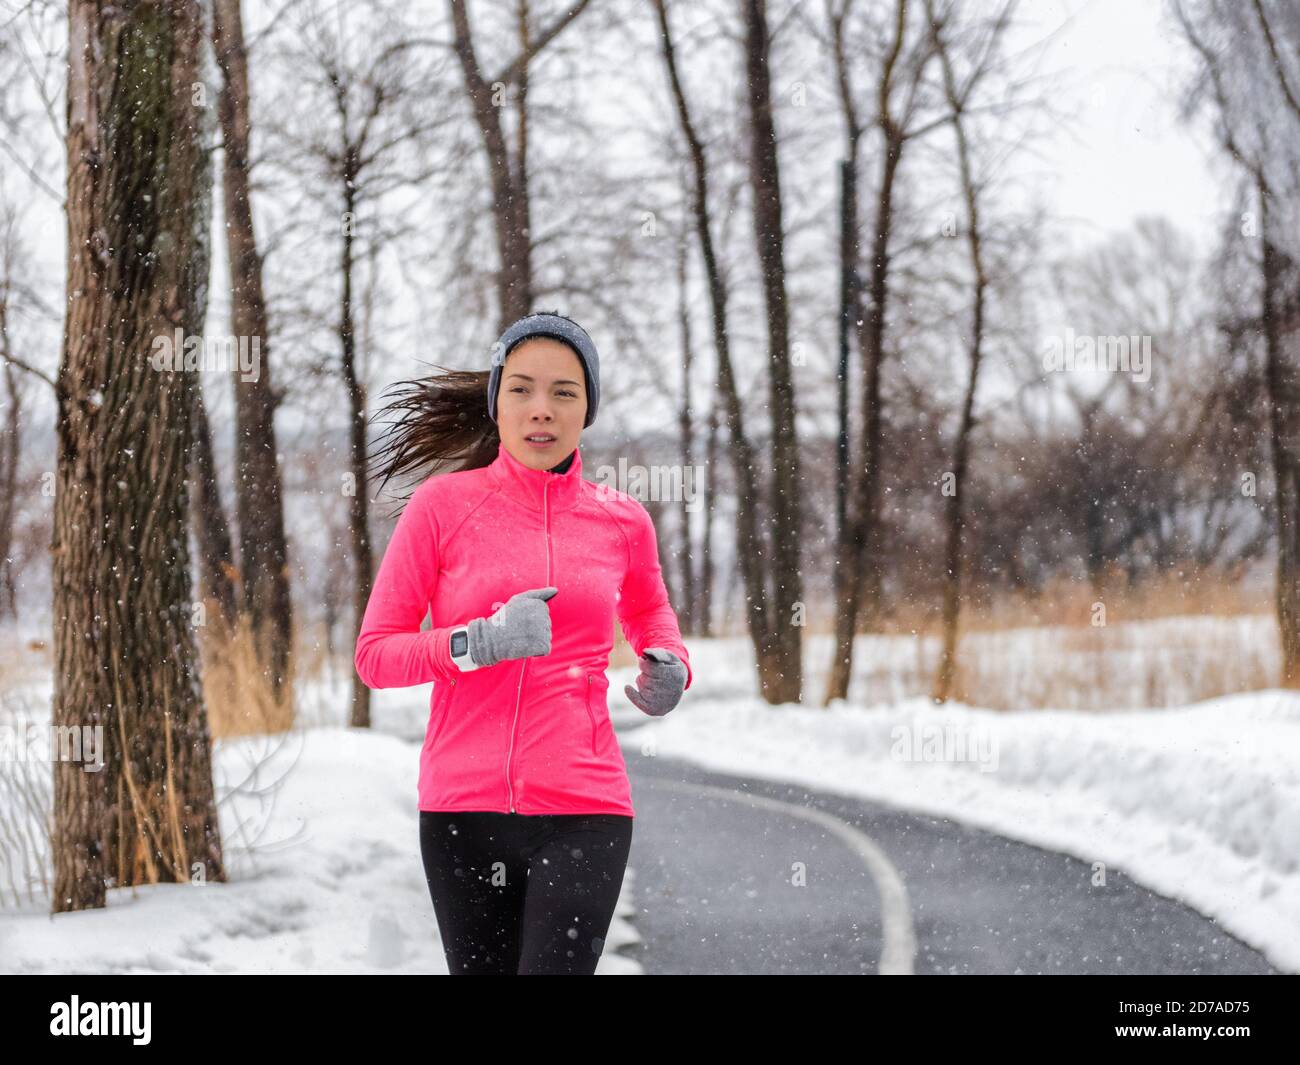 Hiver running sport femme portant une veste et une montre intelligente.  Faites du jogging asiatique dans la forêt d'hiver en faisant de l'exercice  de course en extérieur. Mode de vie actif Photo